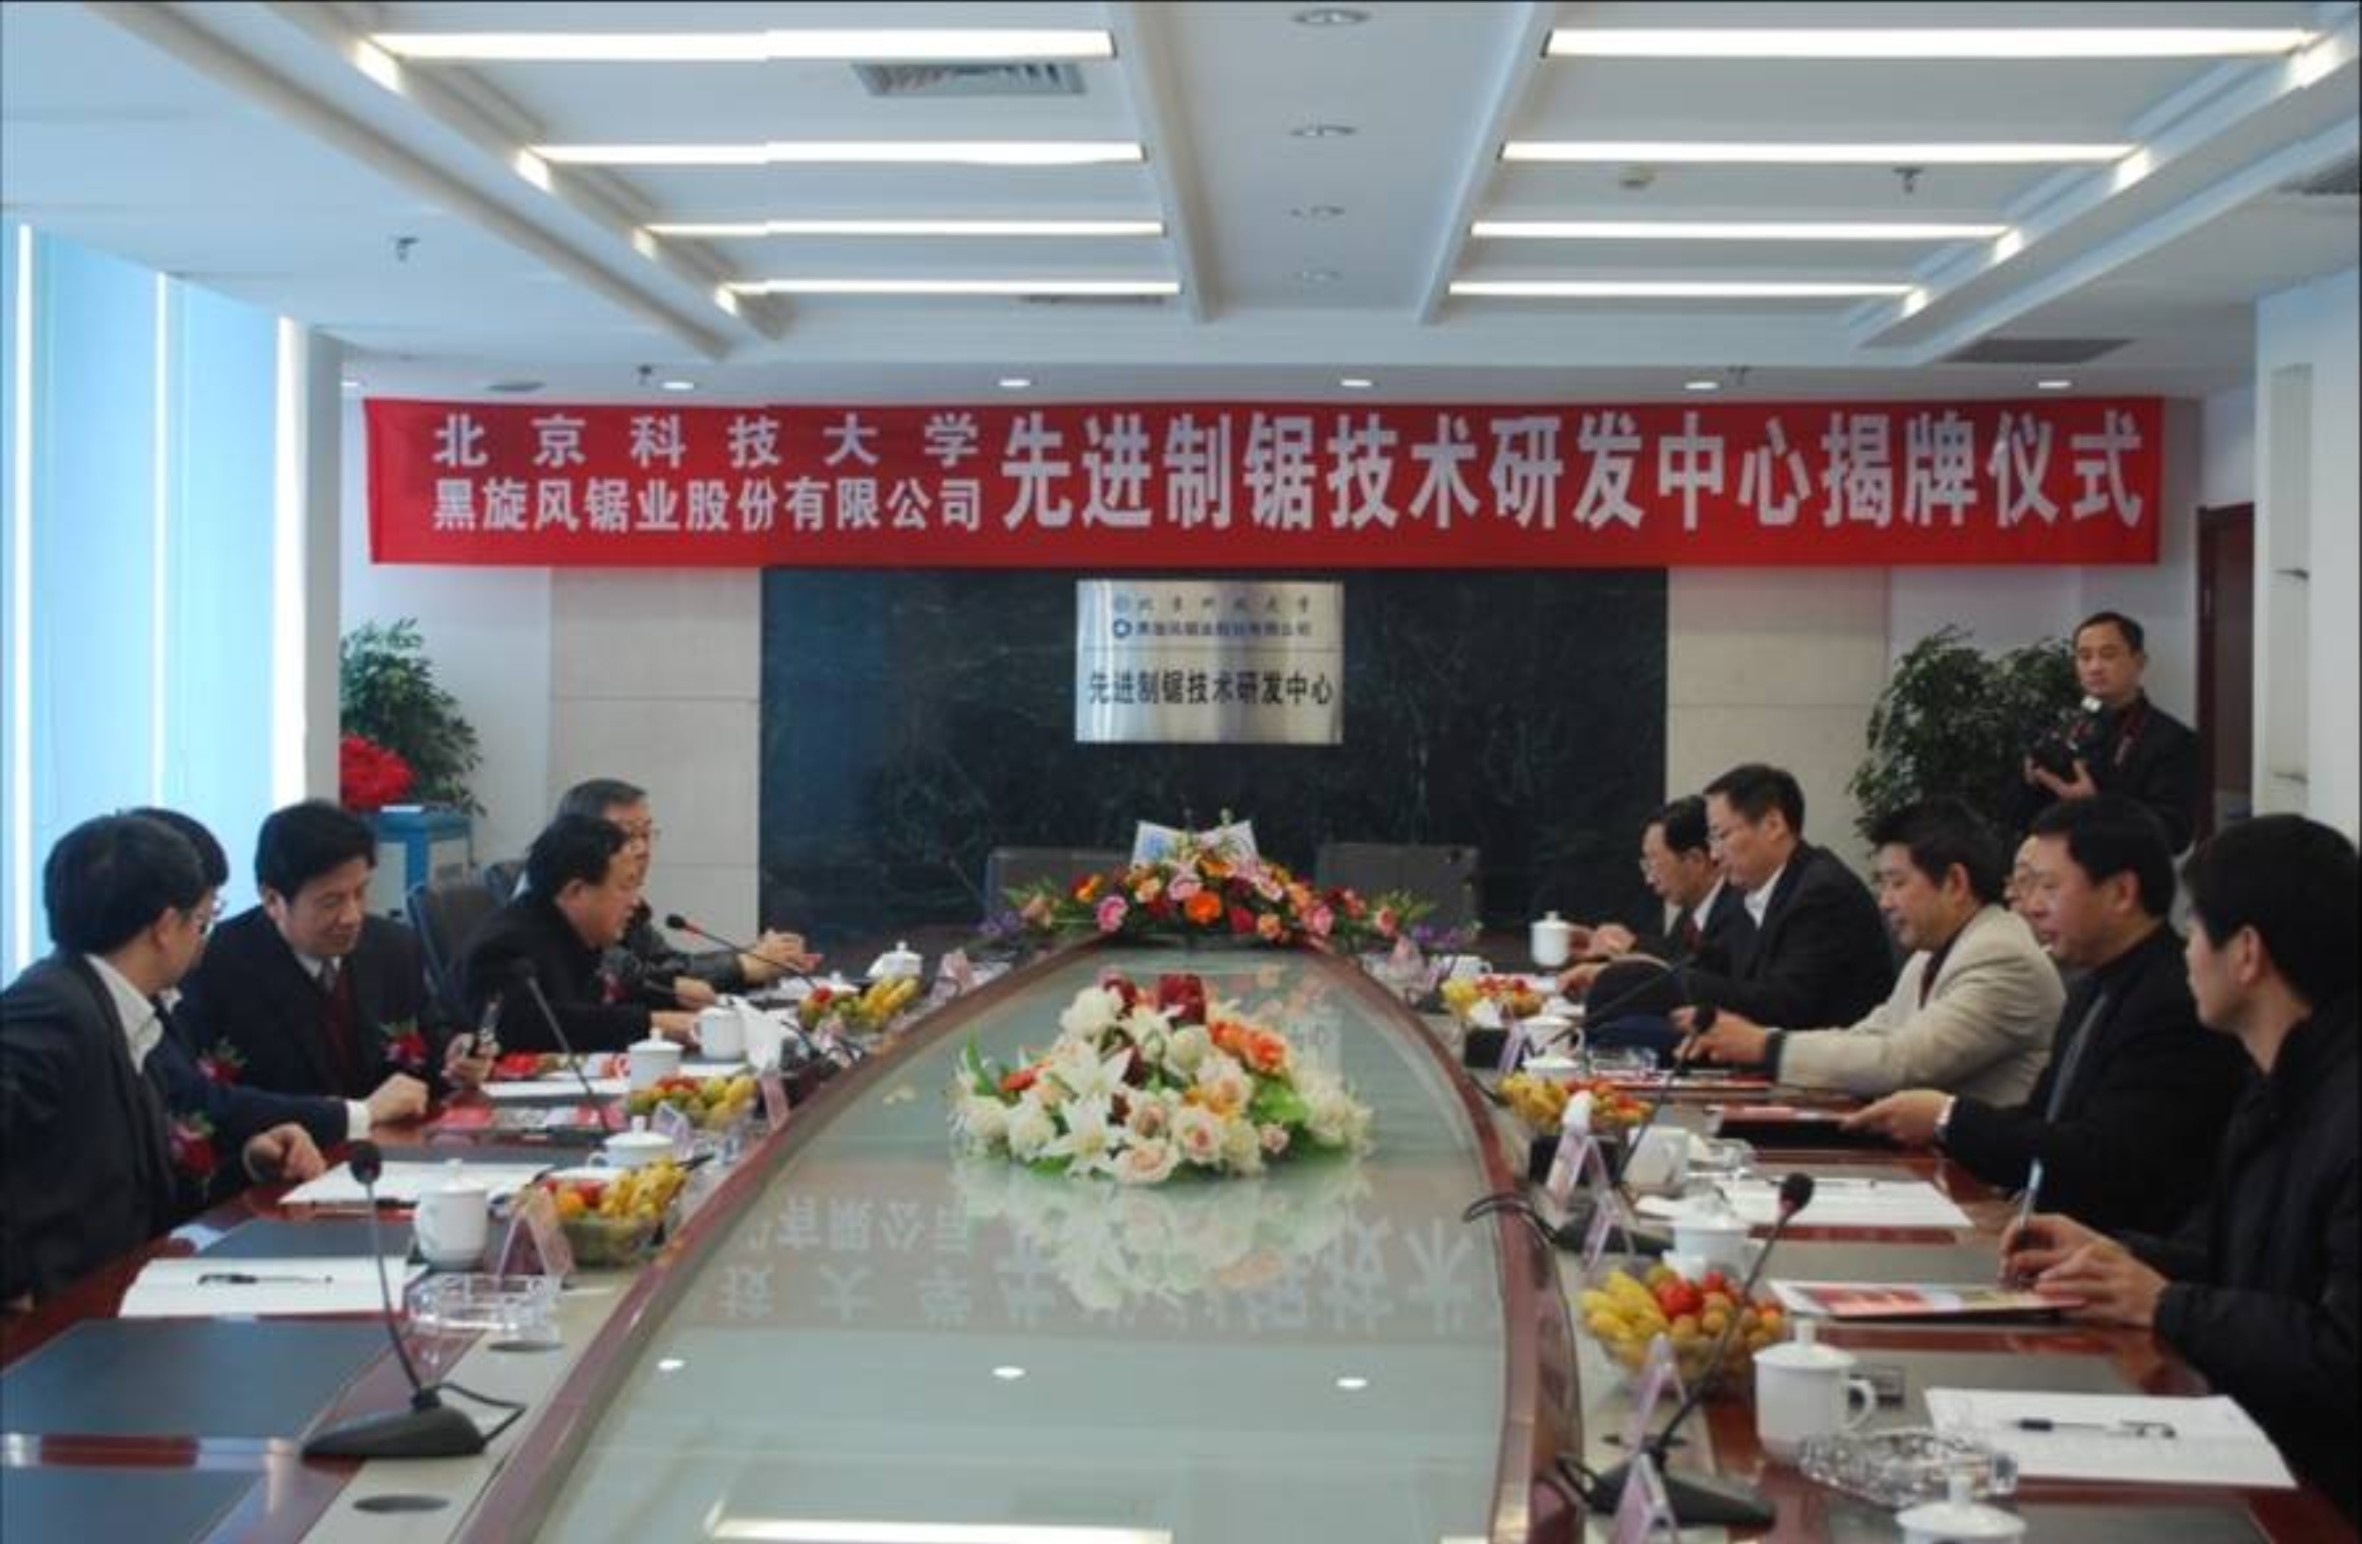 4.2009年12月1日北京科技大学与手机bet356亚洲客户端共同组建先进制锯技术研发中心